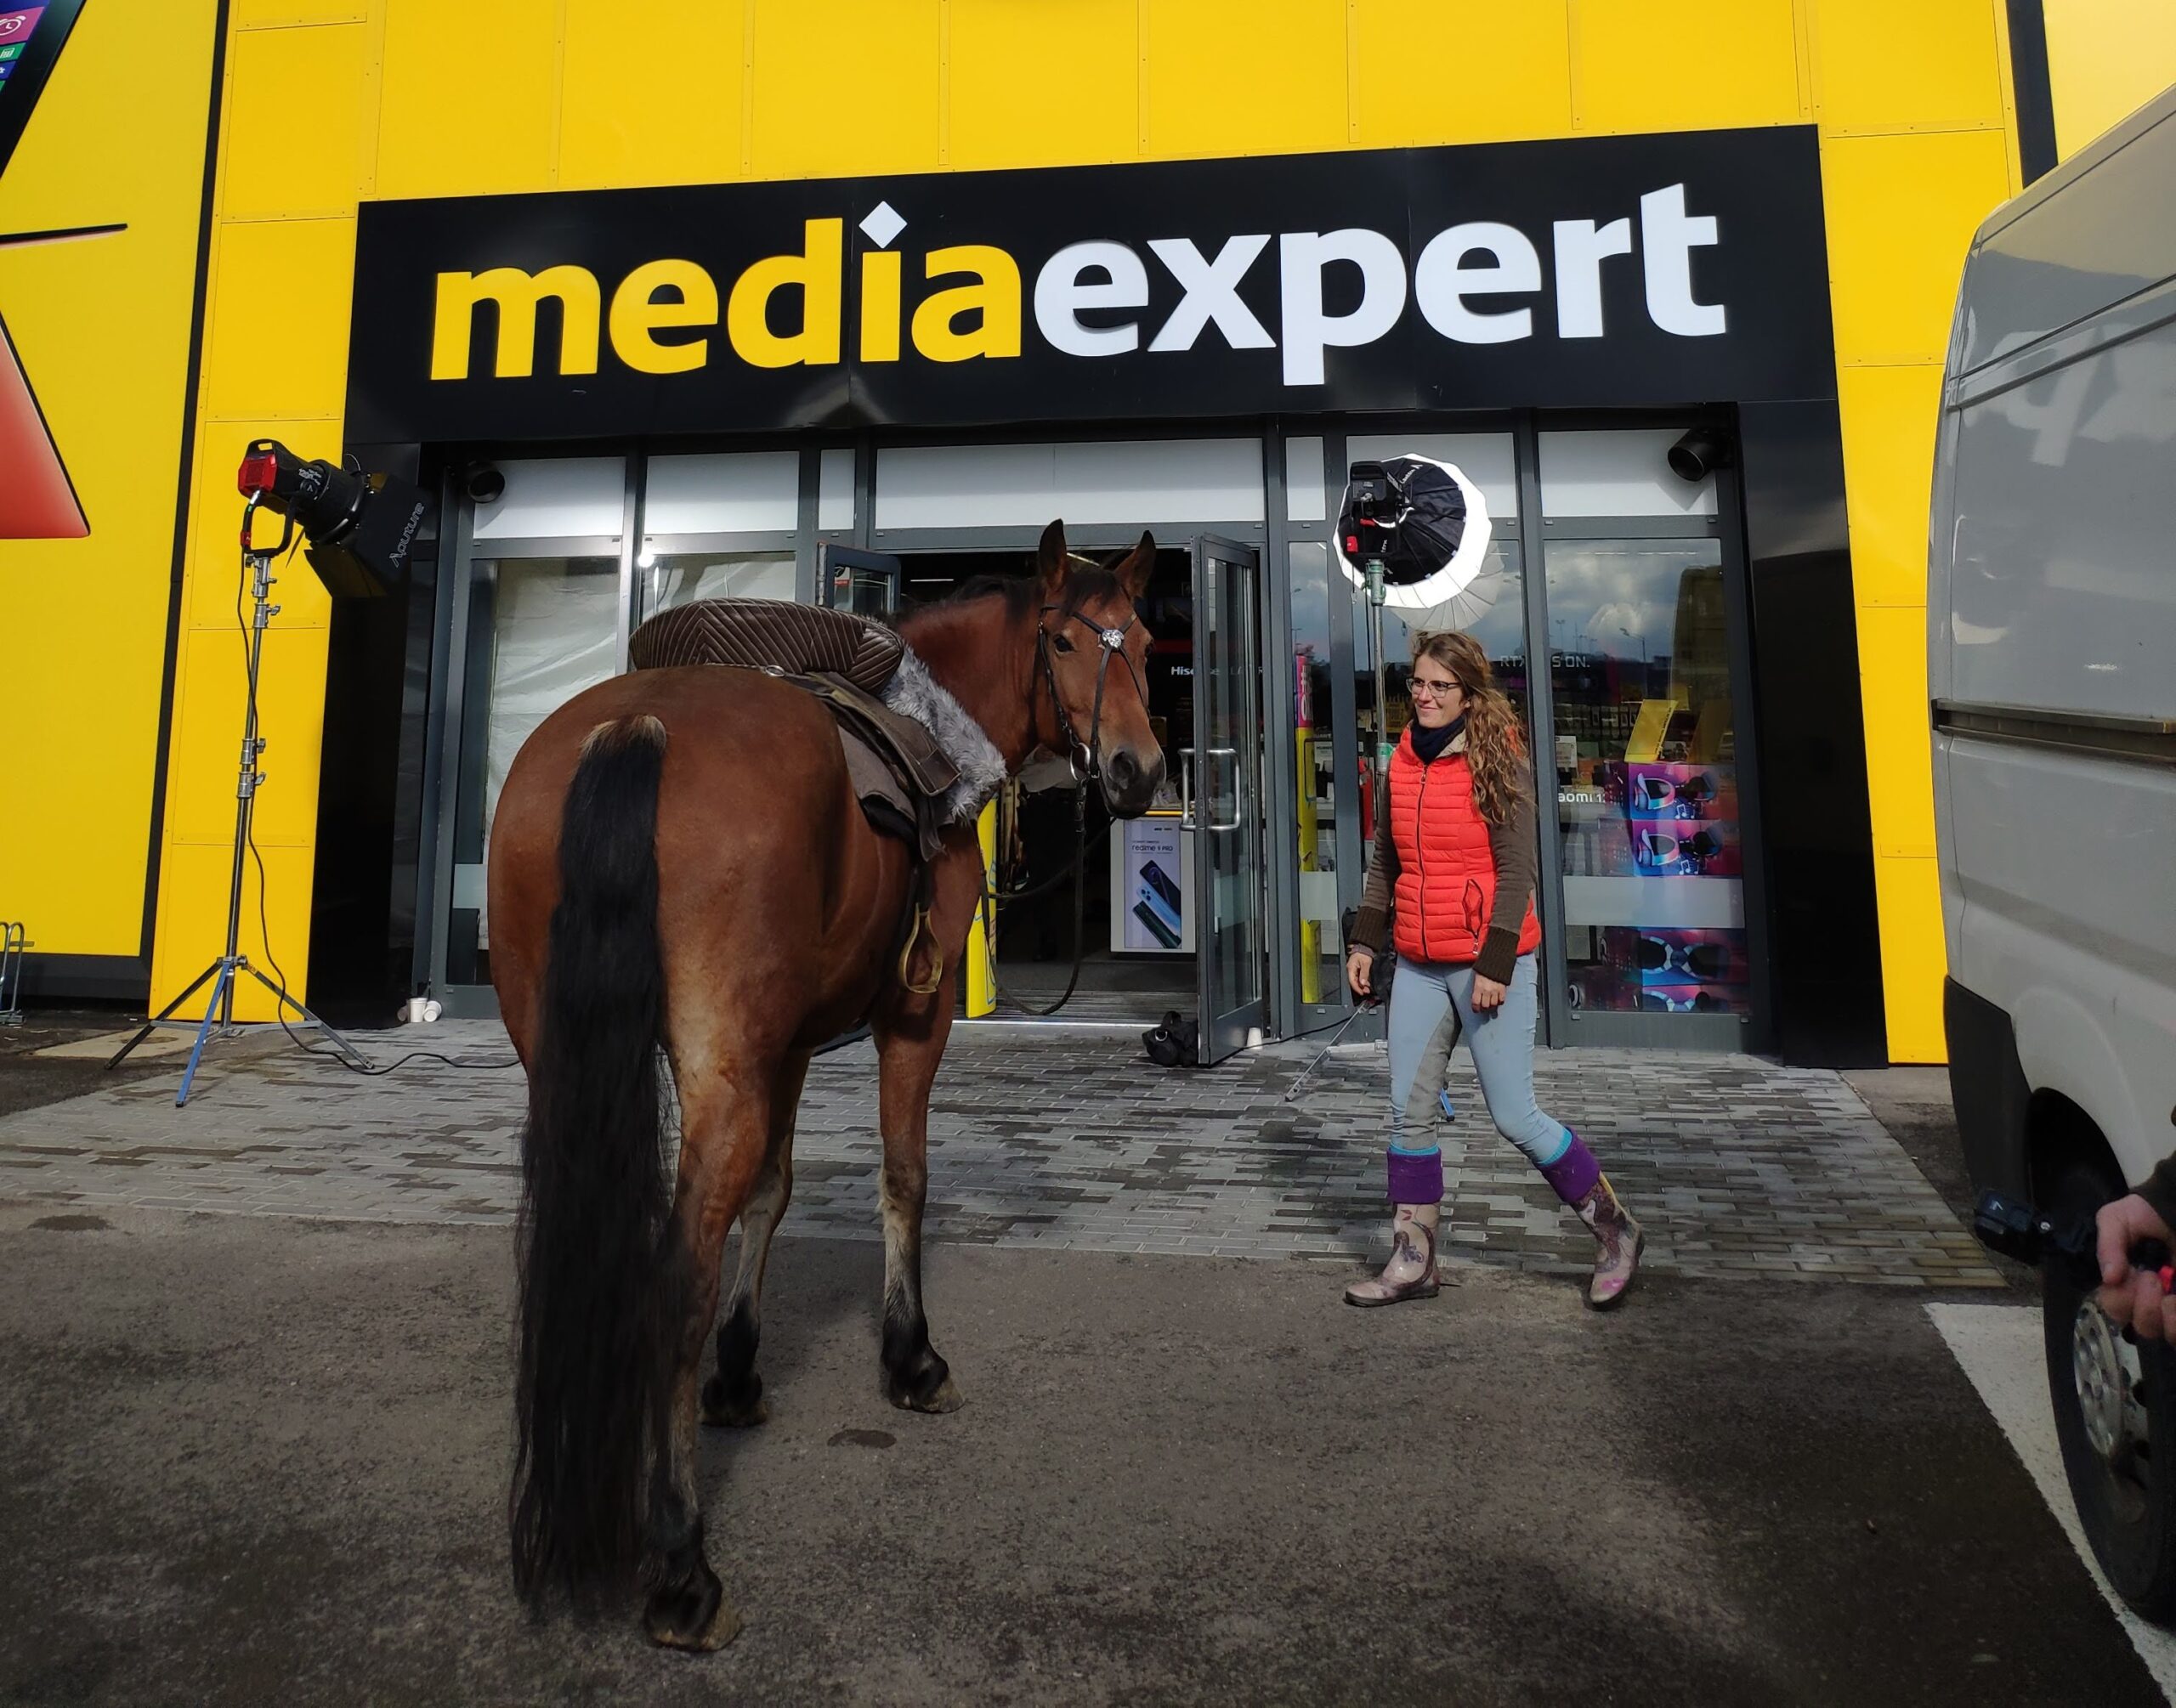 Reklama XBOX dla Media Expert – wynajem konia do reklamy